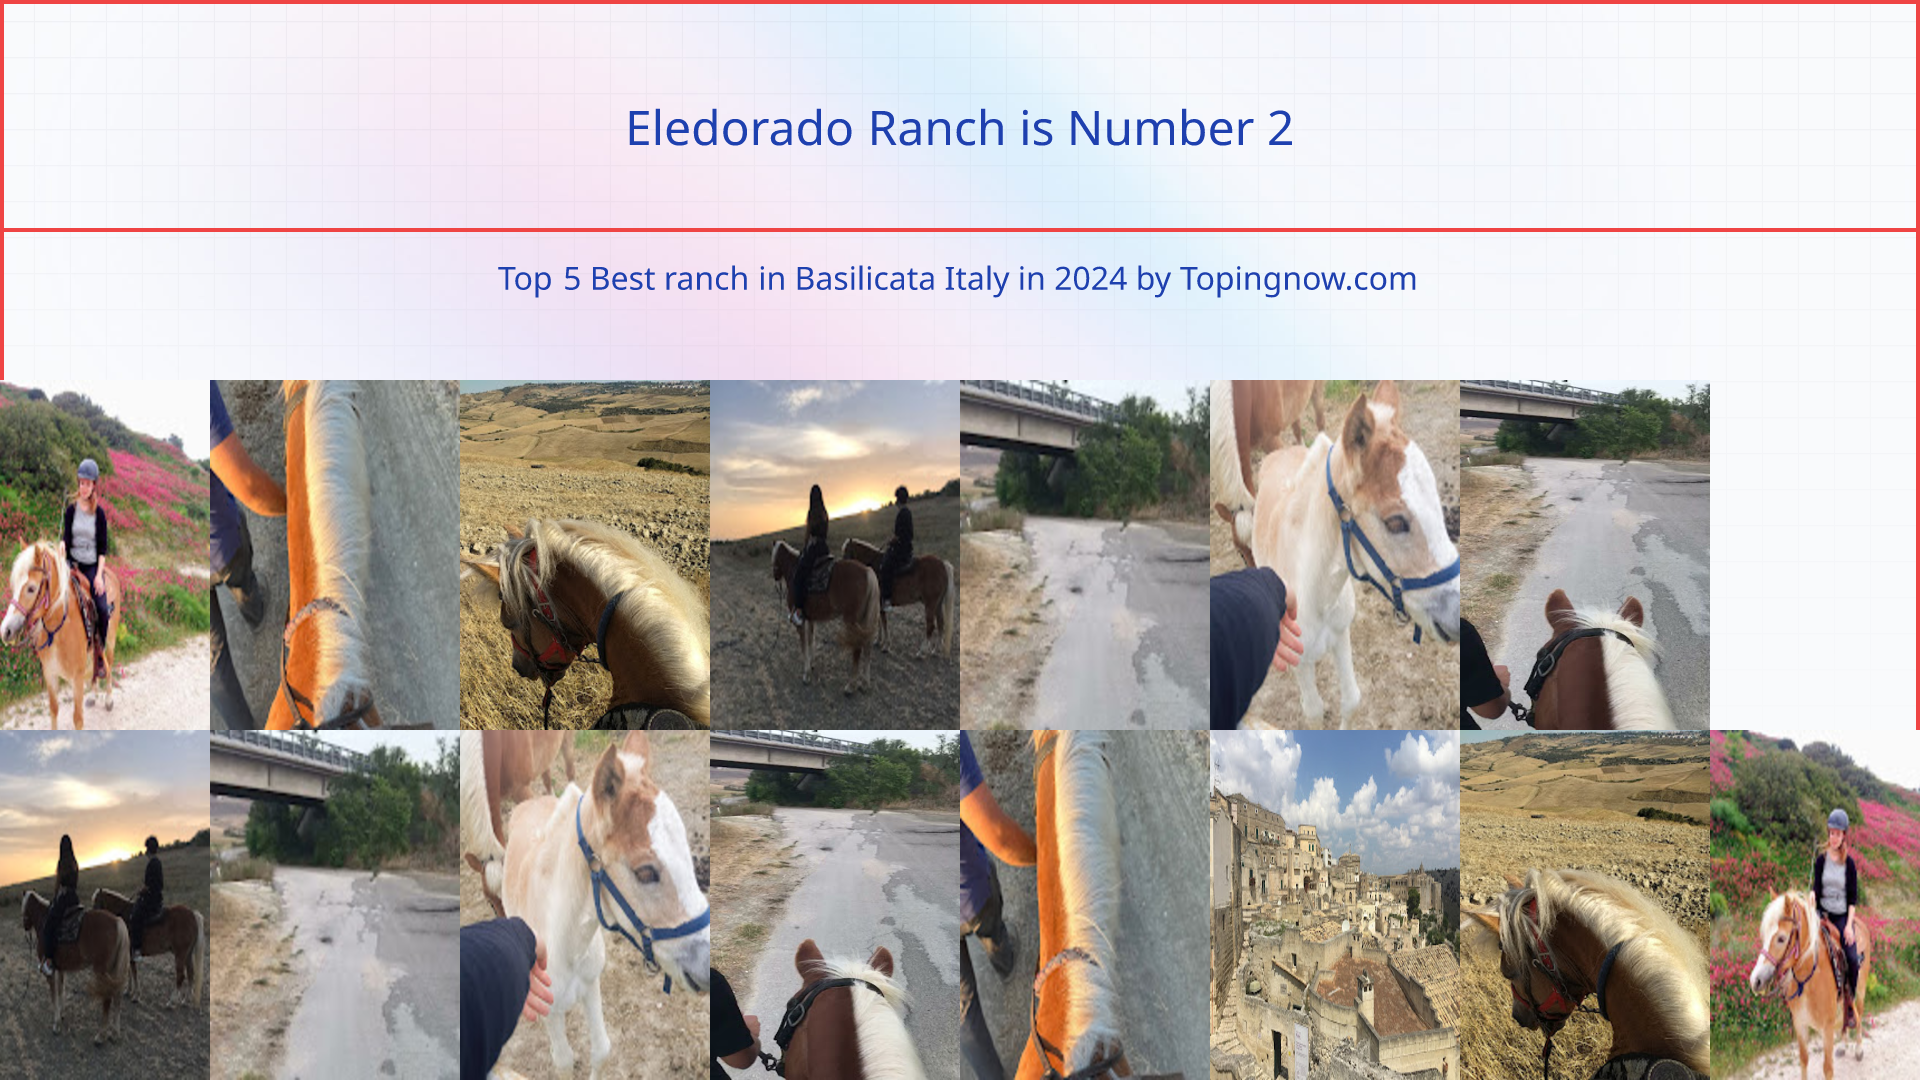 Eledorado Ranch: Top 5 Best ranch in Basilicata Italy in 2024